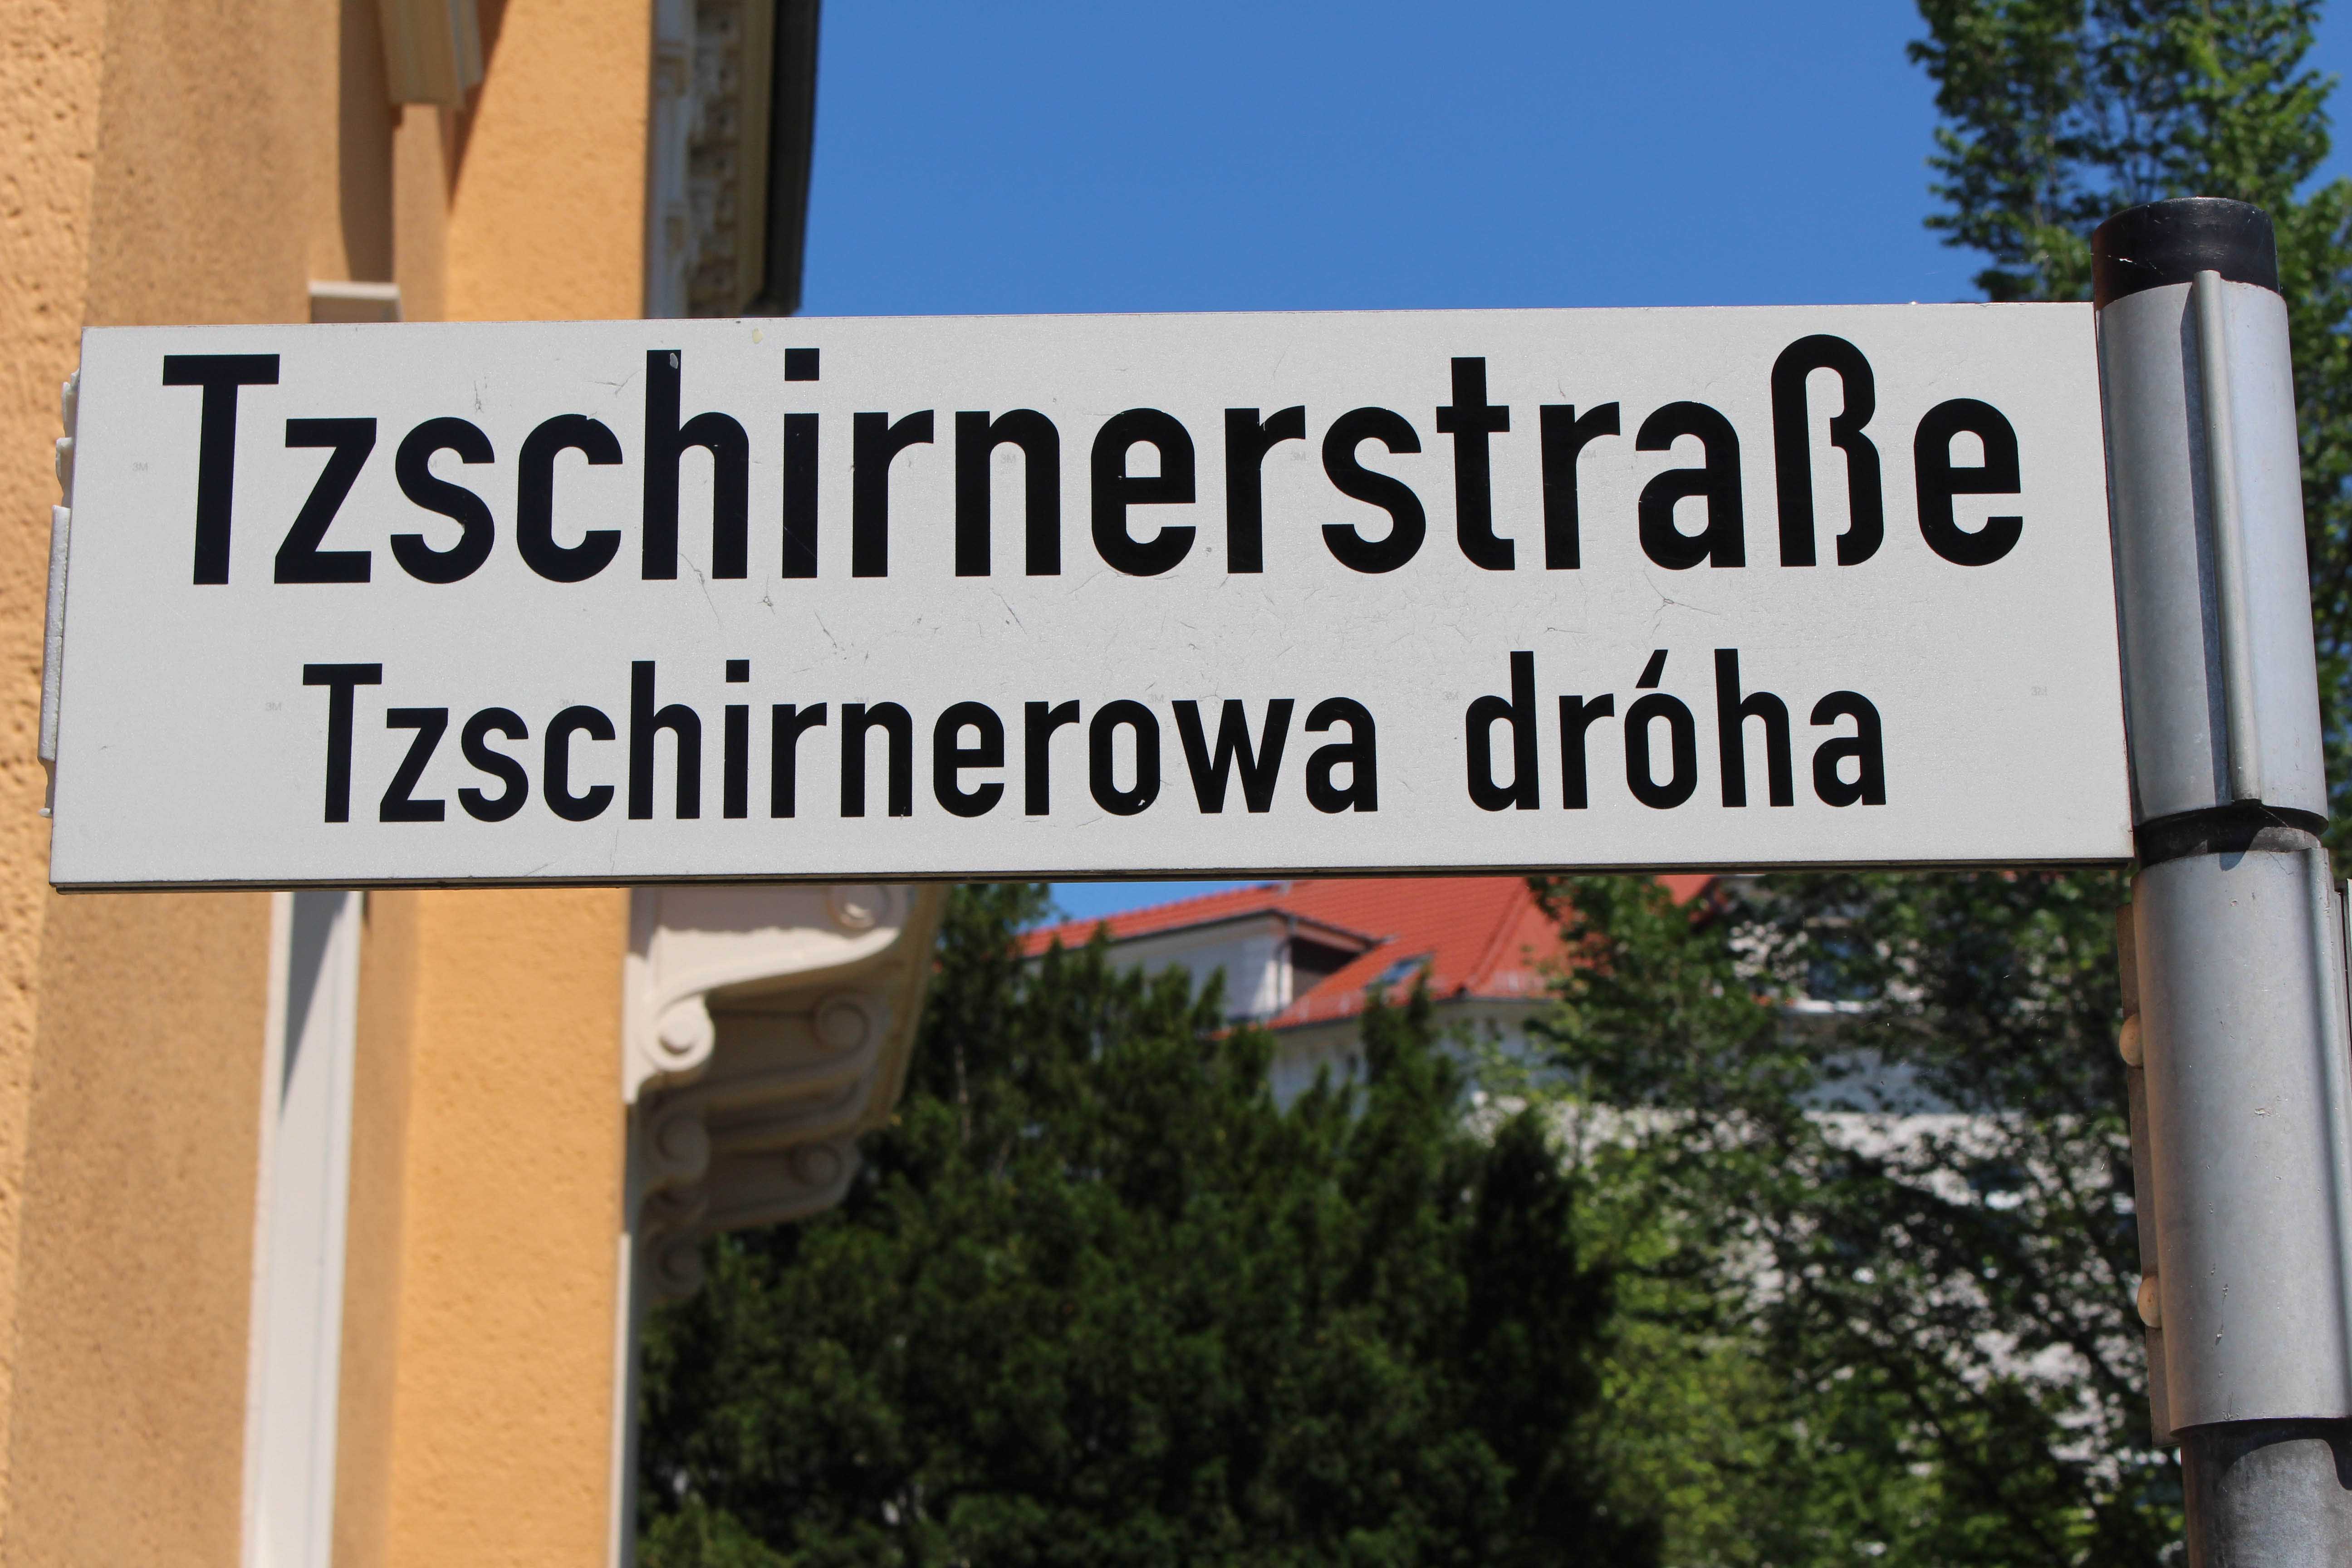 Nahaufnahme eines Straßenschildes, auf dem auf Deutsch "Tzschirnerstraße" und auf Sorbisch "Tzschirnerowa dróha" steht